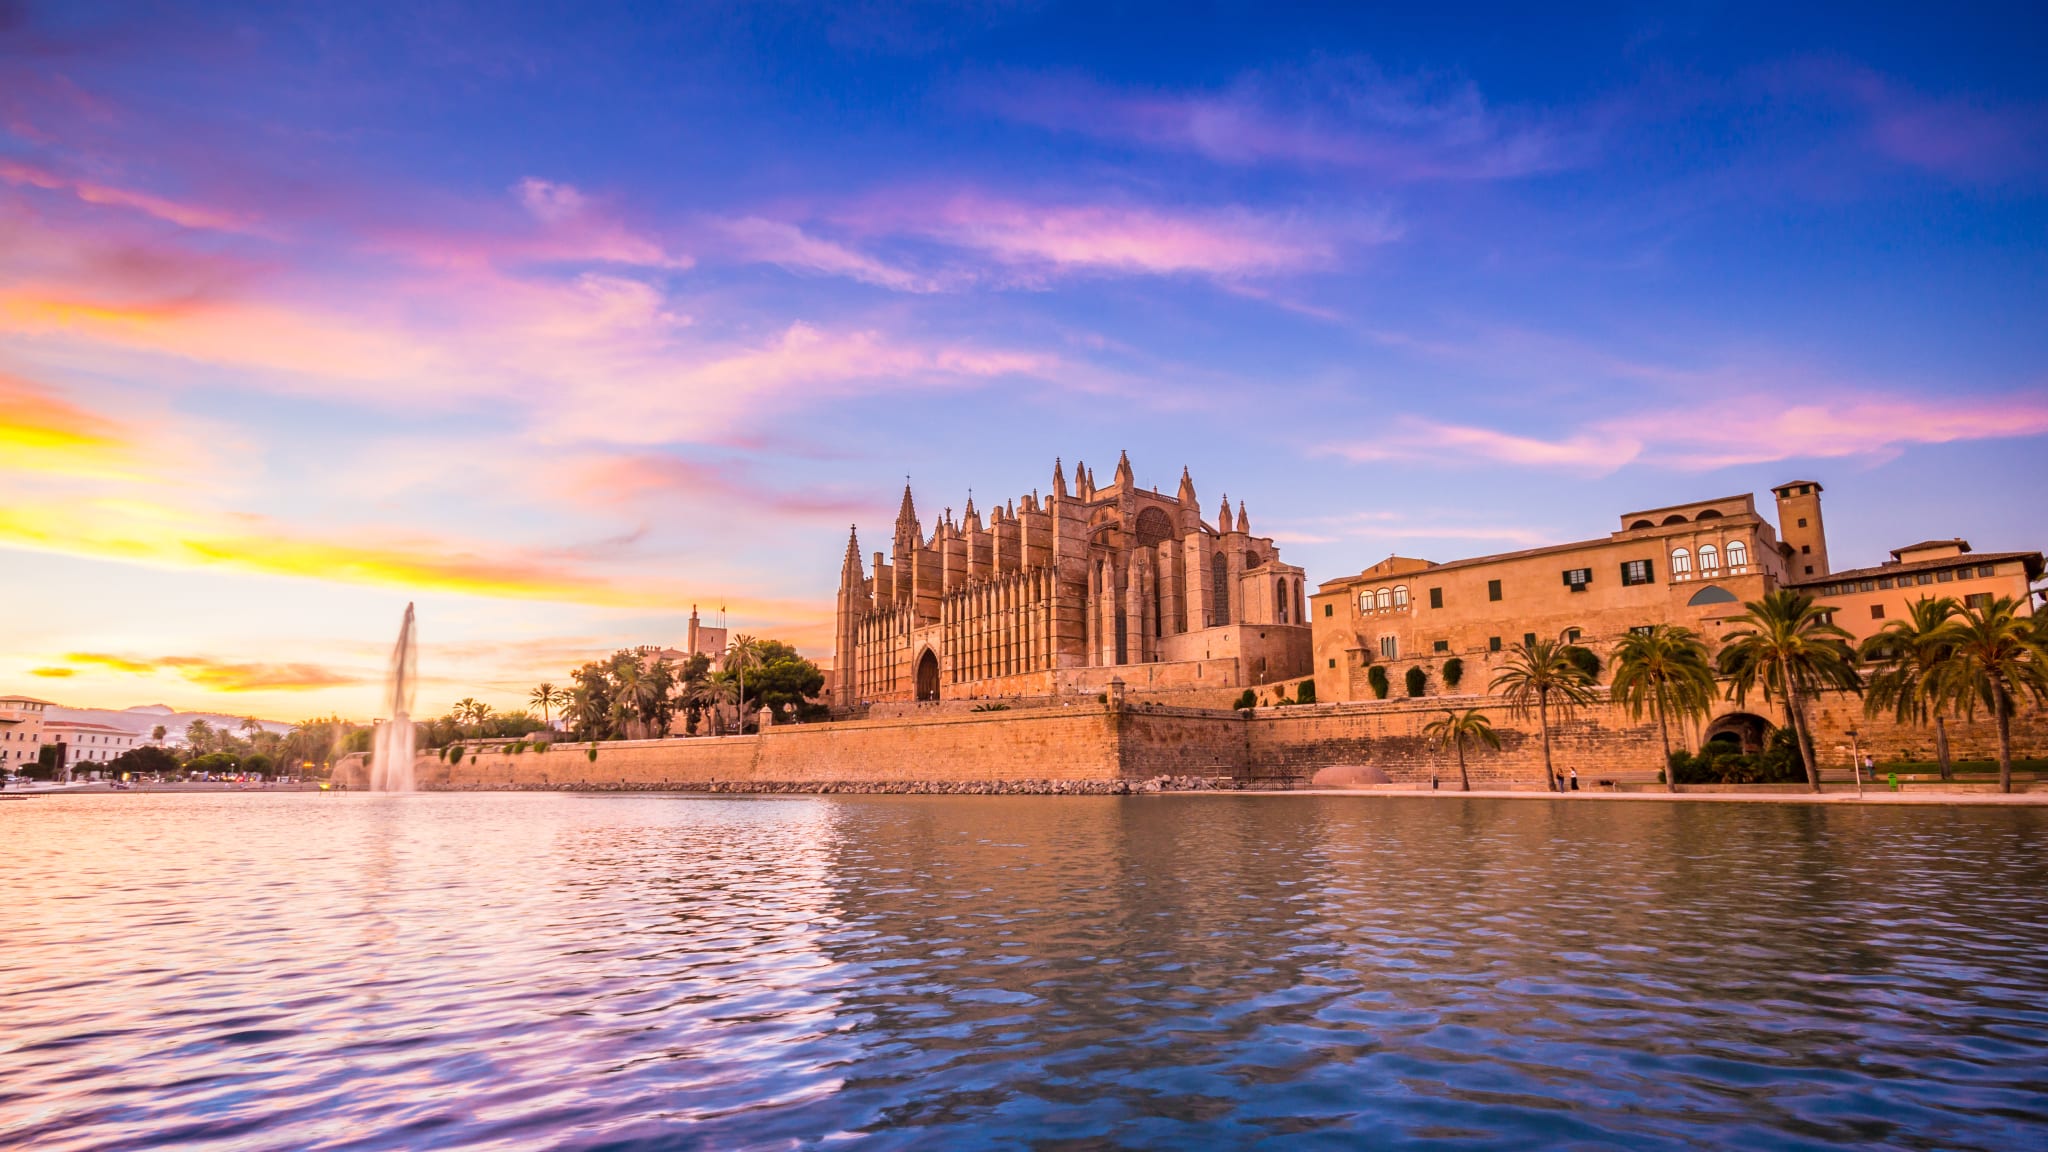 Die Kathedrale von Palma bietet zum Sonnenuntergang ein tolles Bild. © powell83